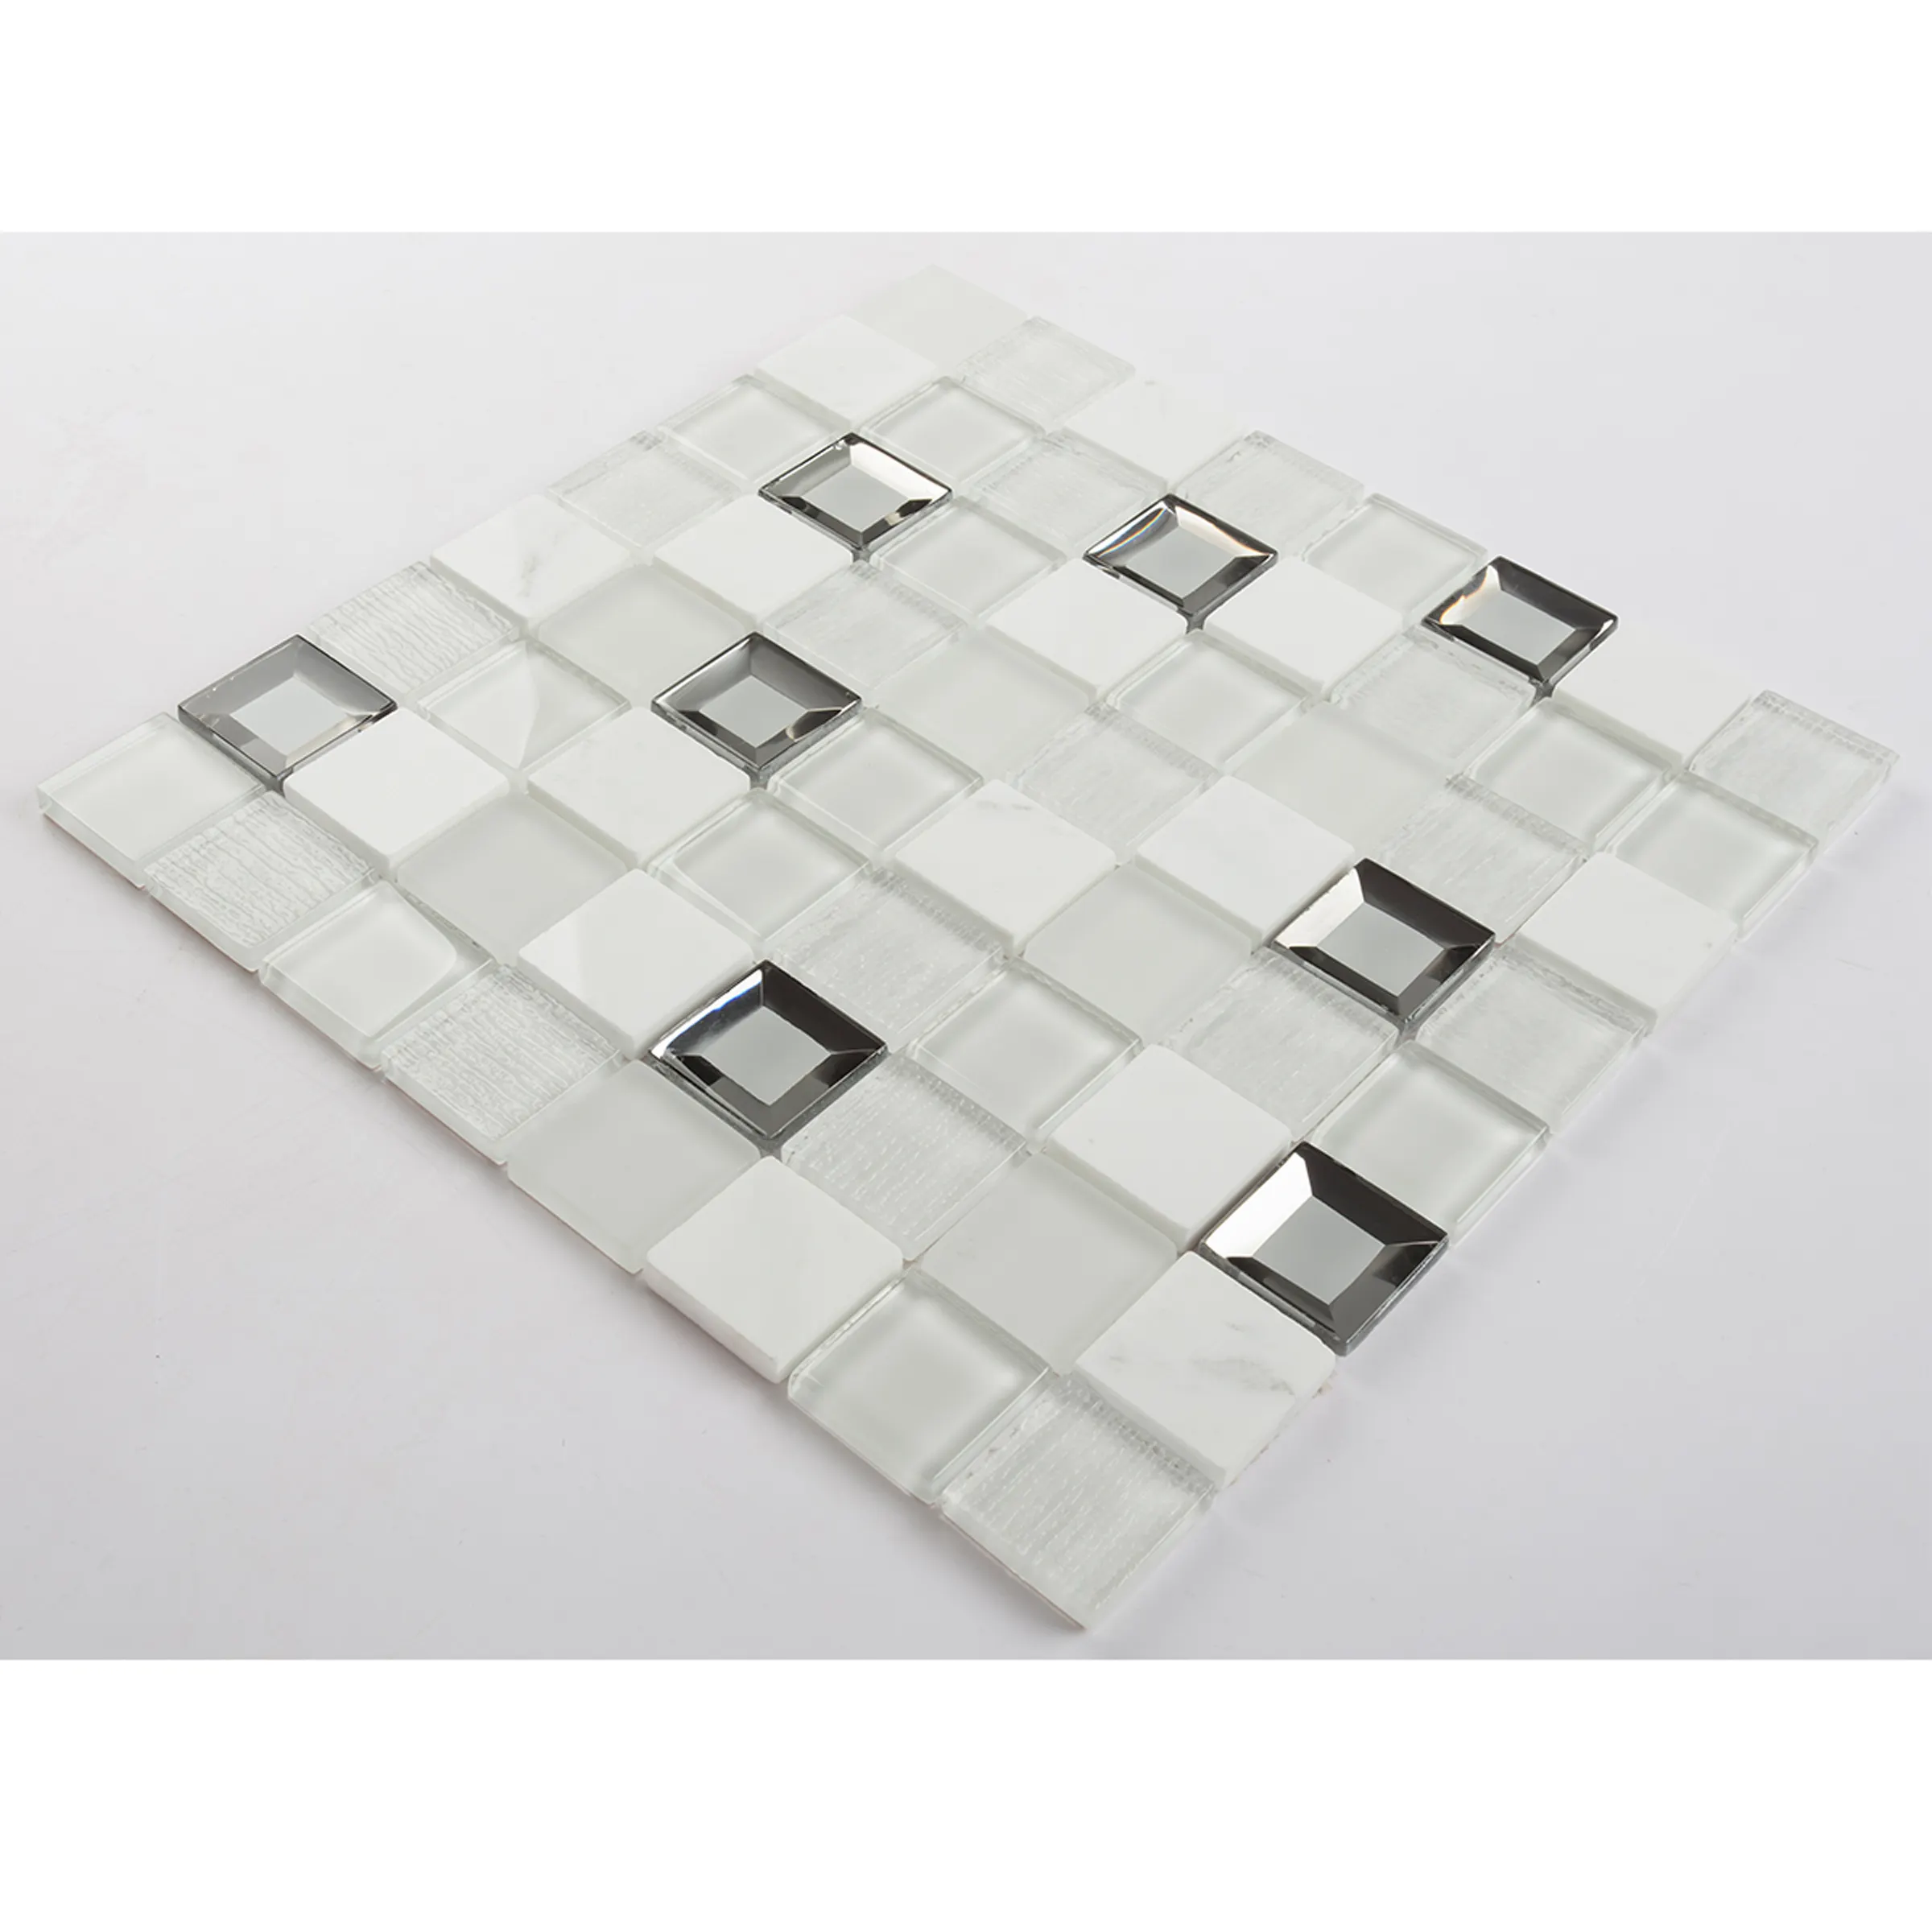 Кристалл & Алмаз & камень микс 36x36x8 мм стеклянная мозаичная плитка Backsplash для кухни, ванной комнаты, гостиной